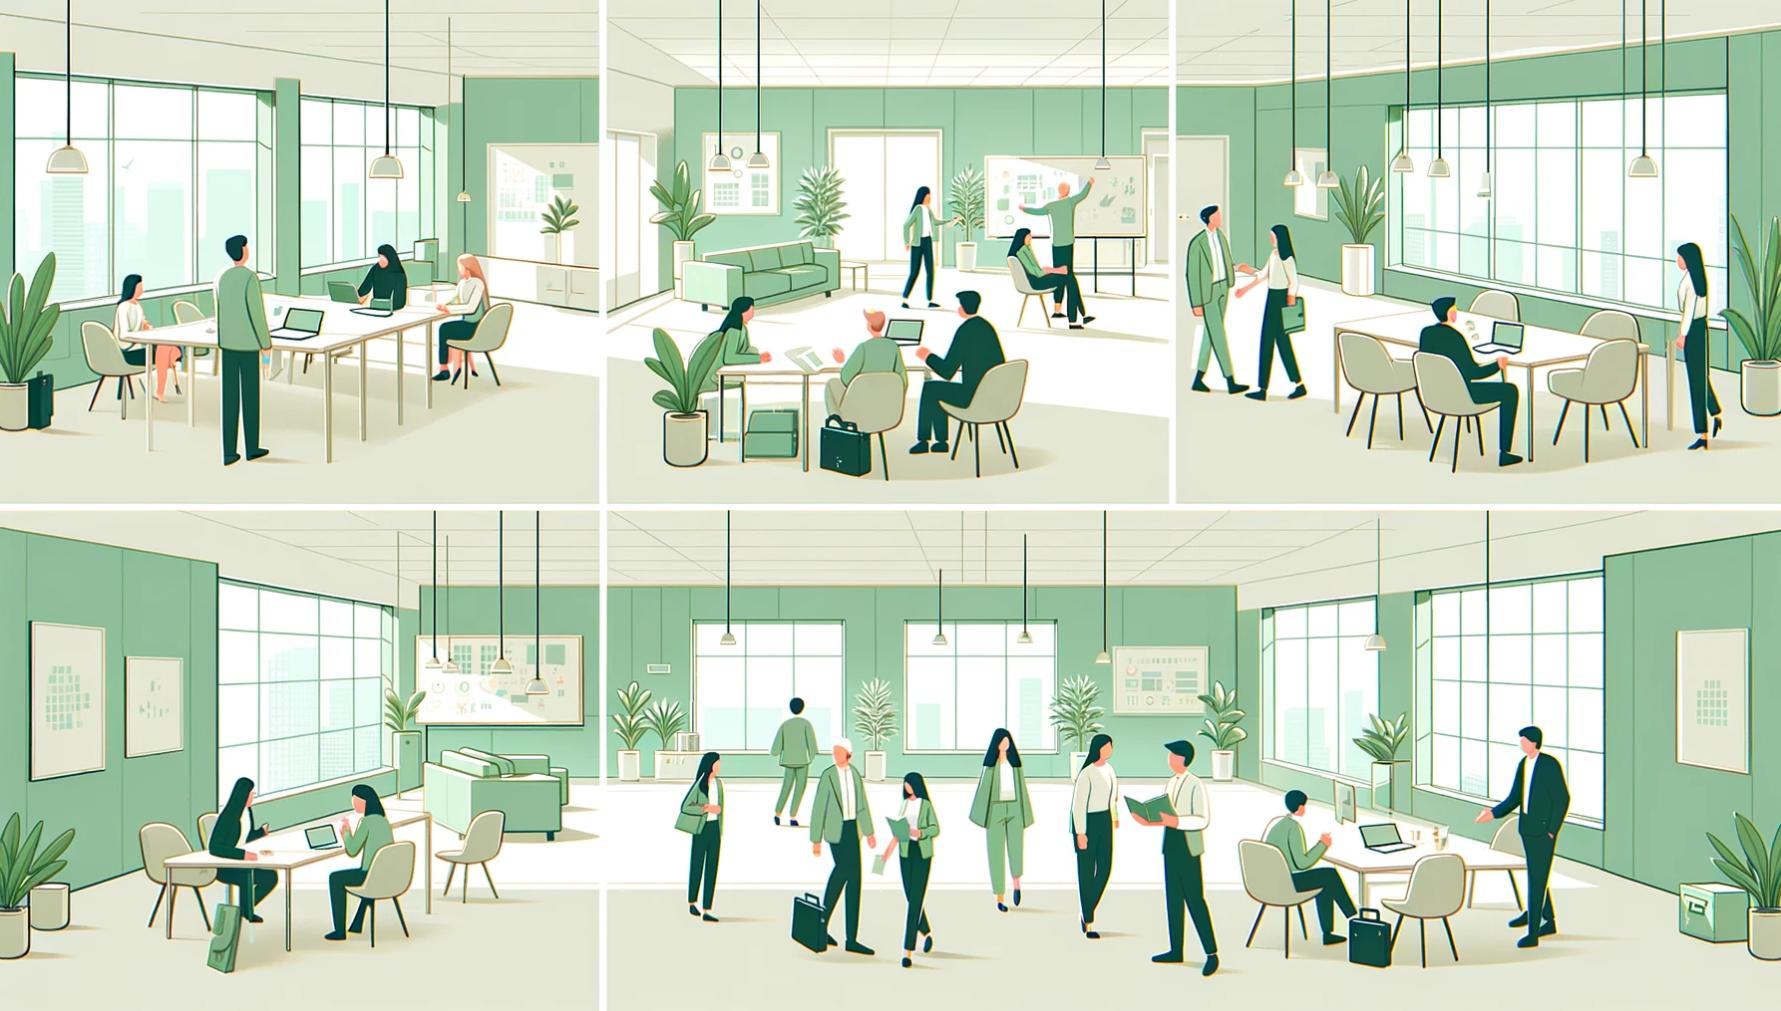 Dibujos animados de personas trabajando en una oficina